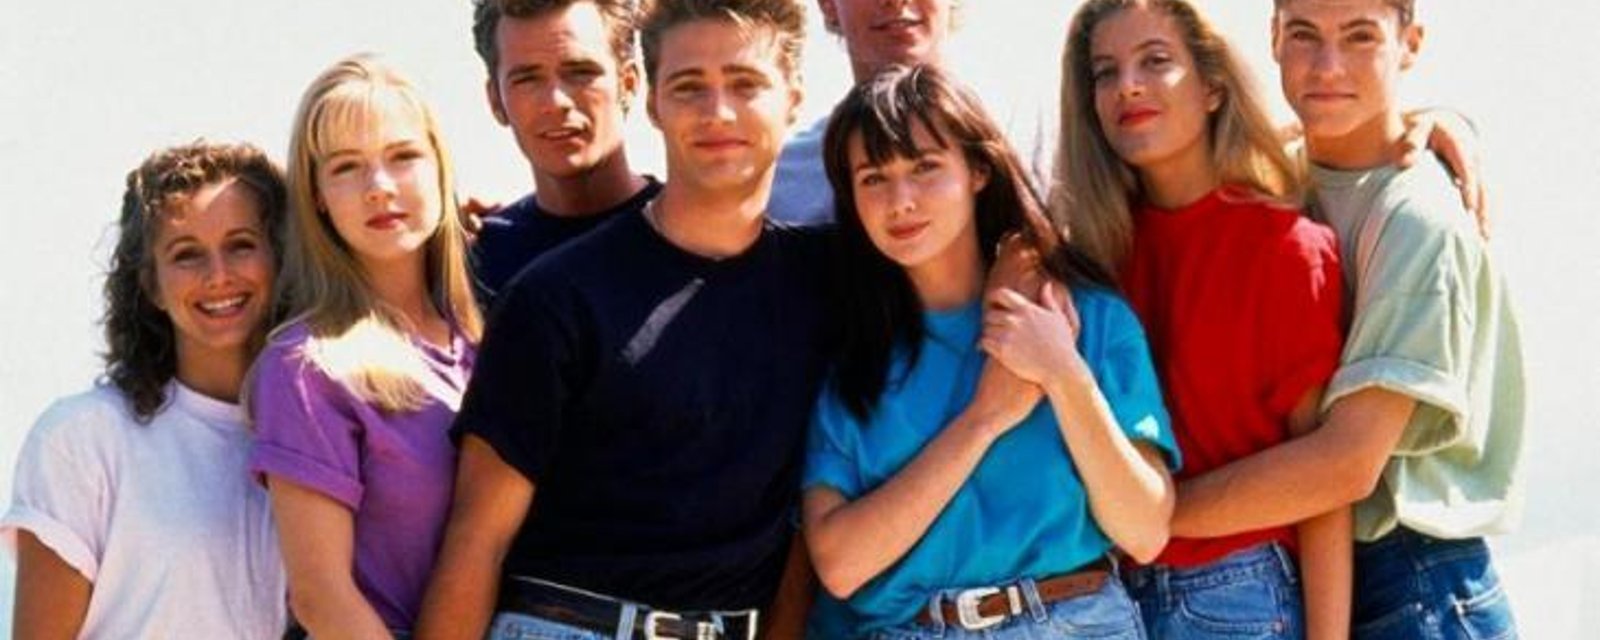 Les premières images de la nouvelle version de Beverly Hills 90210 sont dévoilées